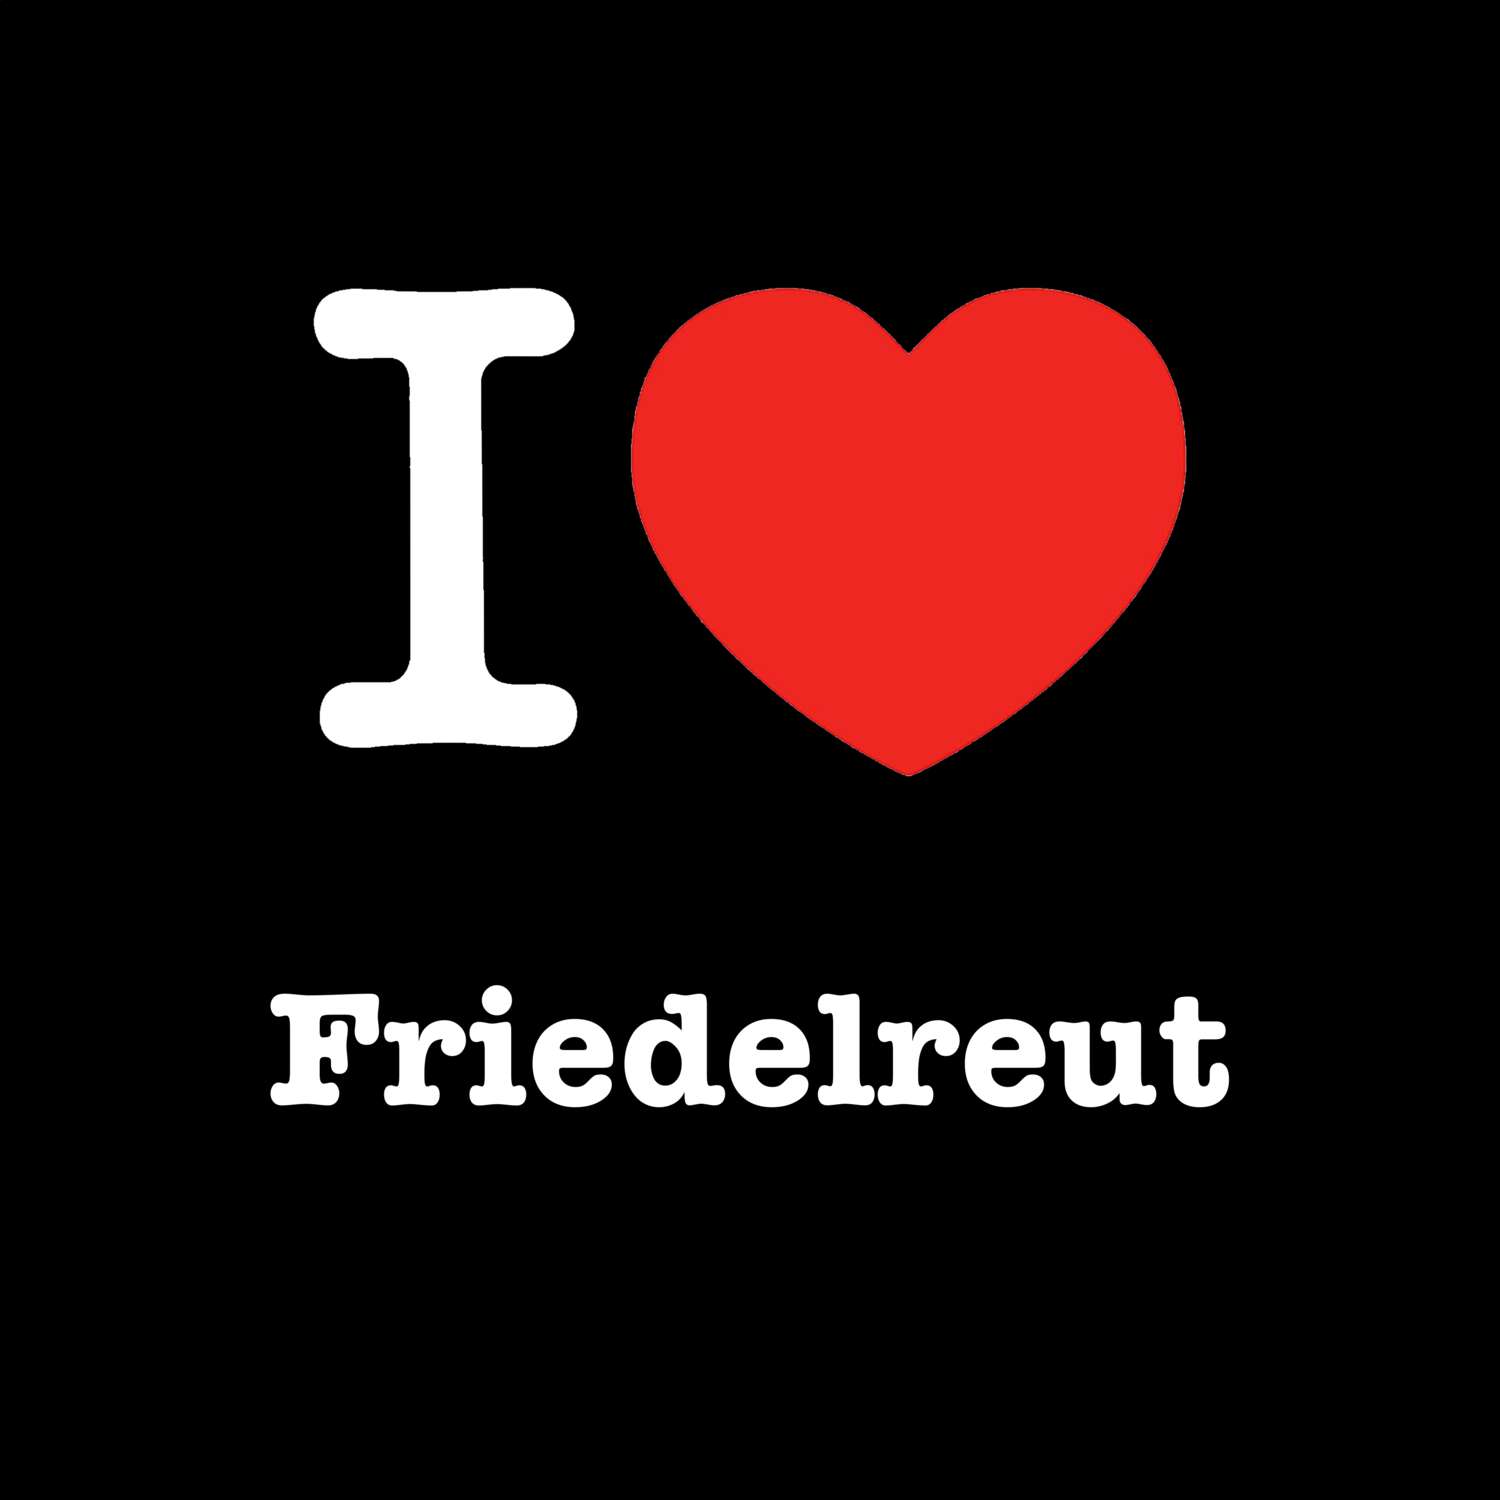 Friedelreut T-Shirt »I love«